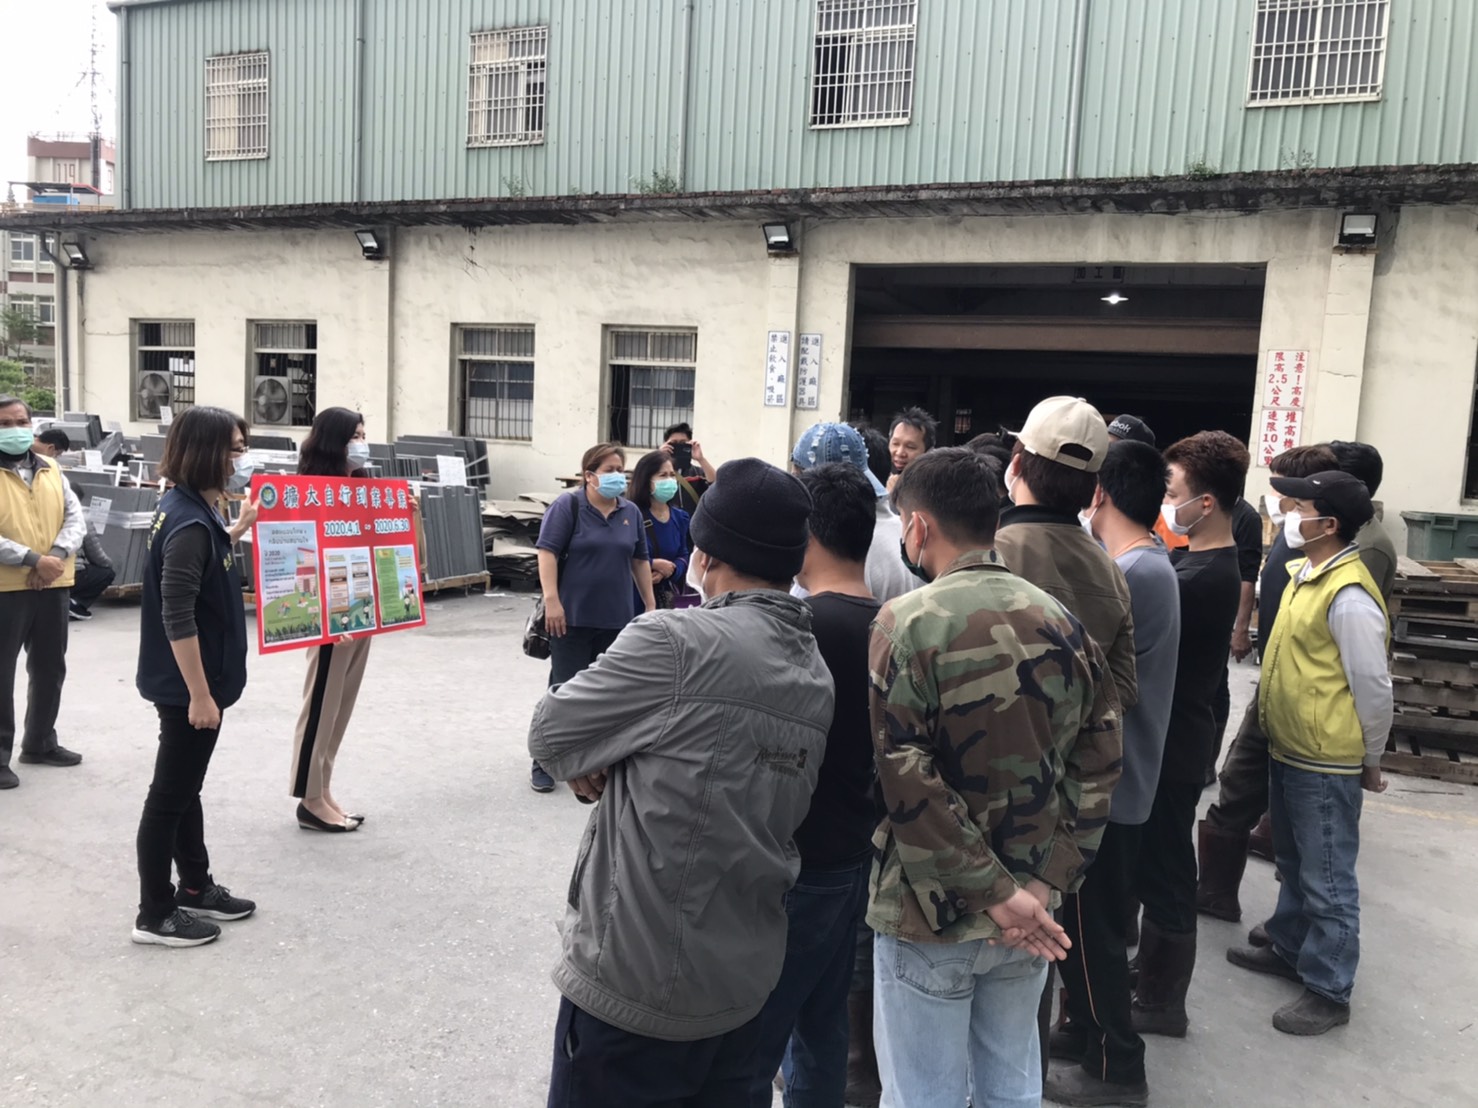 Departemen Imigrasi Hualien Stasiun Layanan Kabupaten Yuxiang Enterprise Co, Ltd promosi luar ruangan dan perluasan rencana kasus besar sendiri (disediakan oleh Departemen Imigrasi Hualien Station)